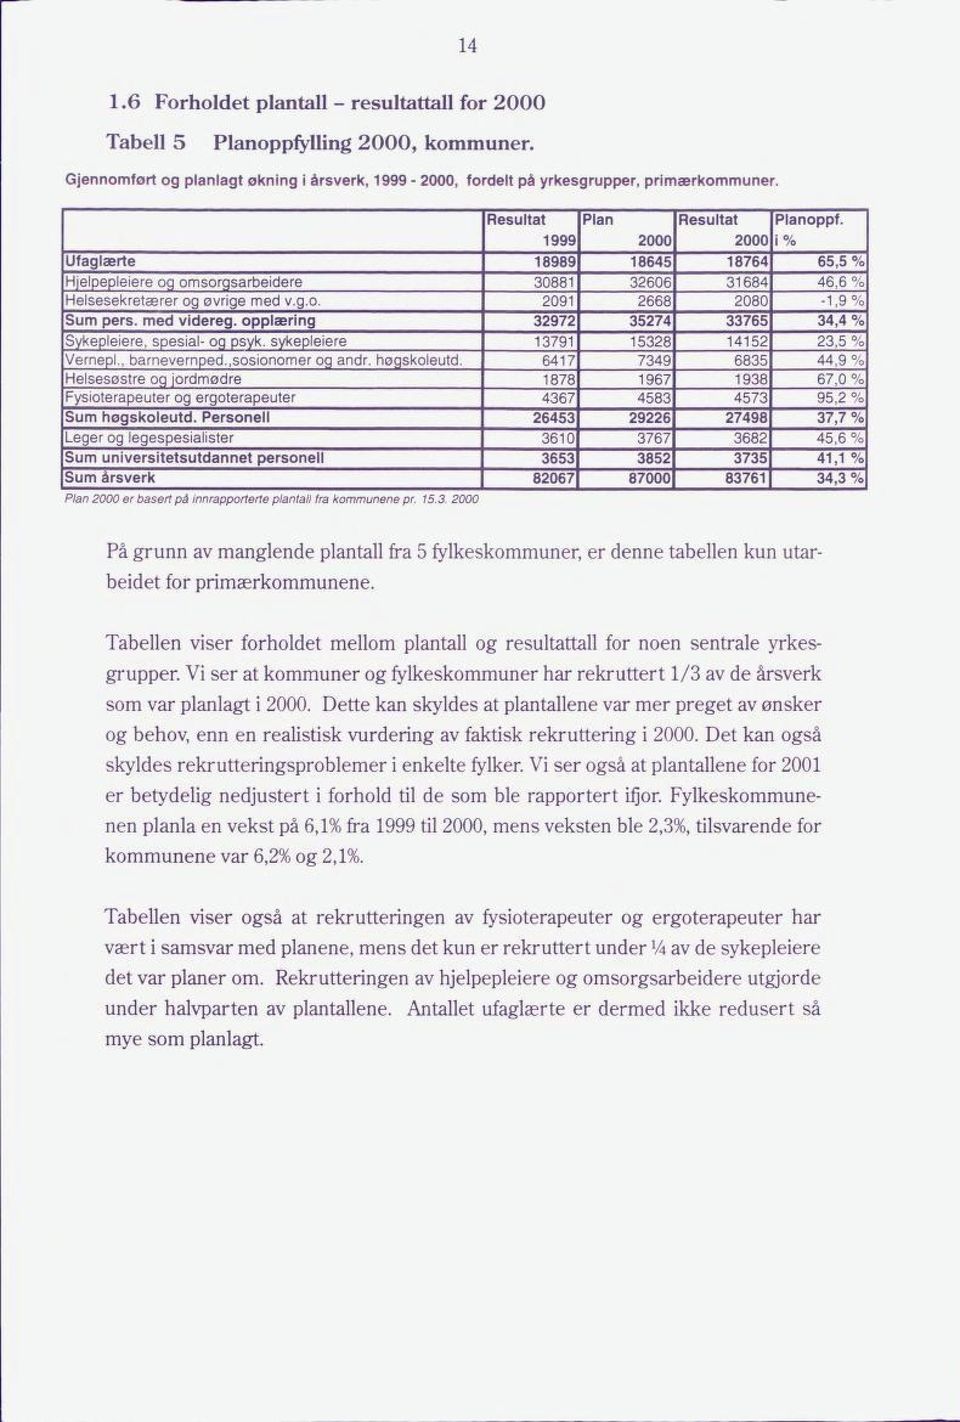 Tabellen viser forholdet mellom plantall og resultattall for noen sentrale yrkes grupper. Vi ser at kommuner og fylkeskommuner har rekruttert 1/3 av de årsverk som var planlagt i 2000.